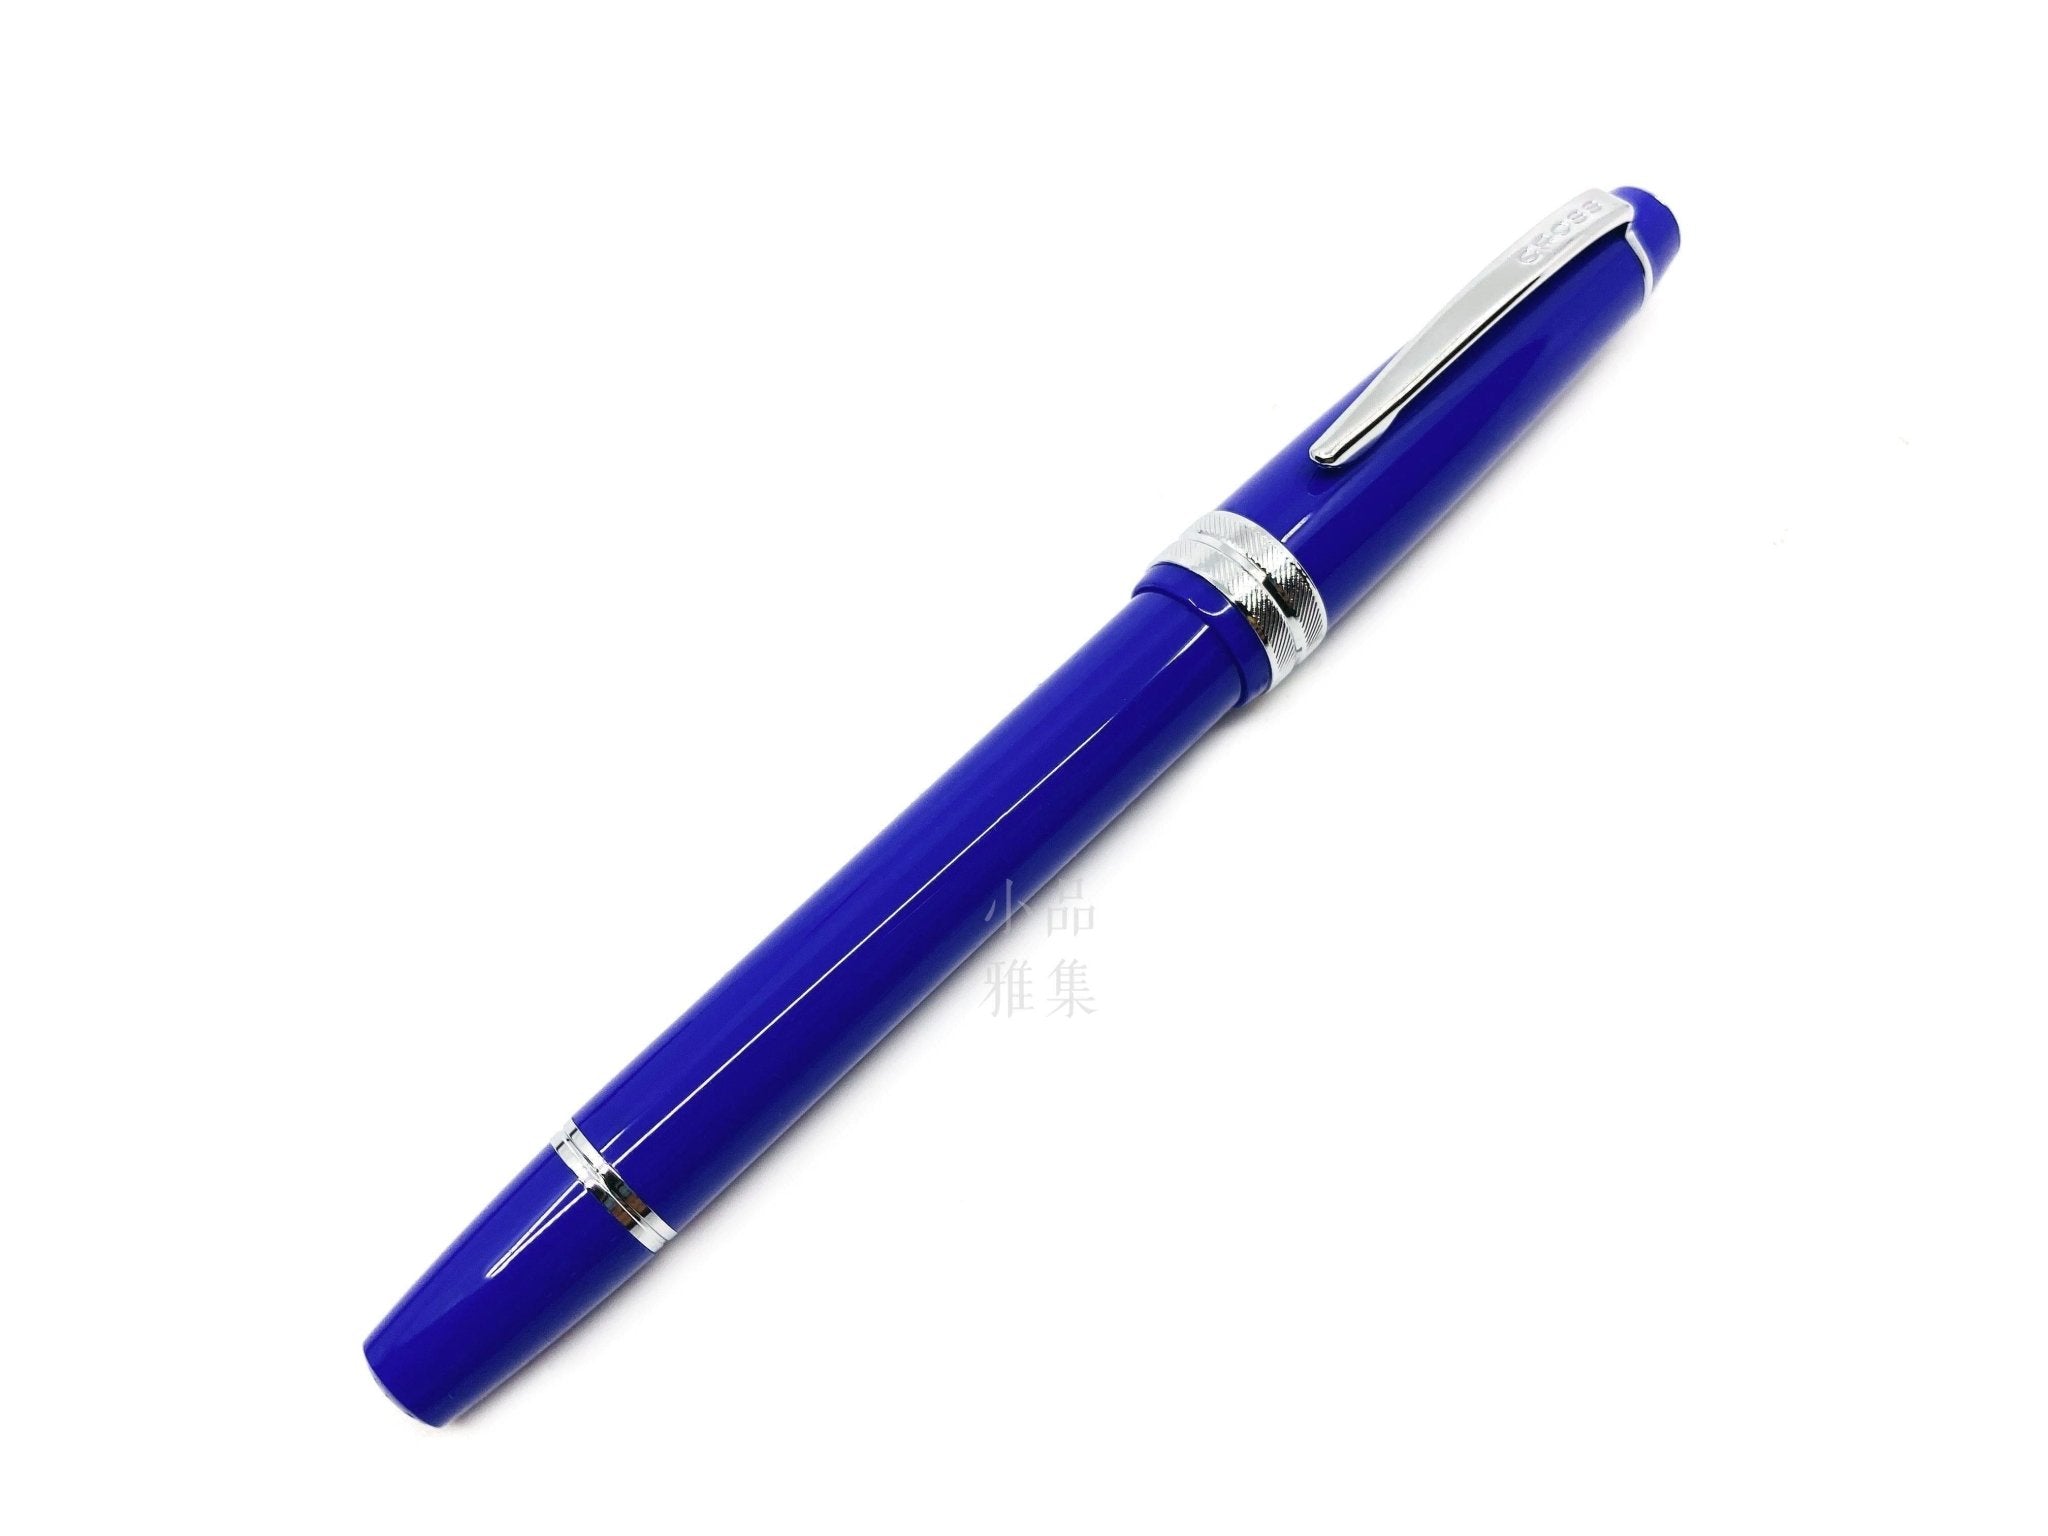 CROSS BAILEY LIGHT blue Fountain Pen - TY Lee Pen Shop - TY Lee